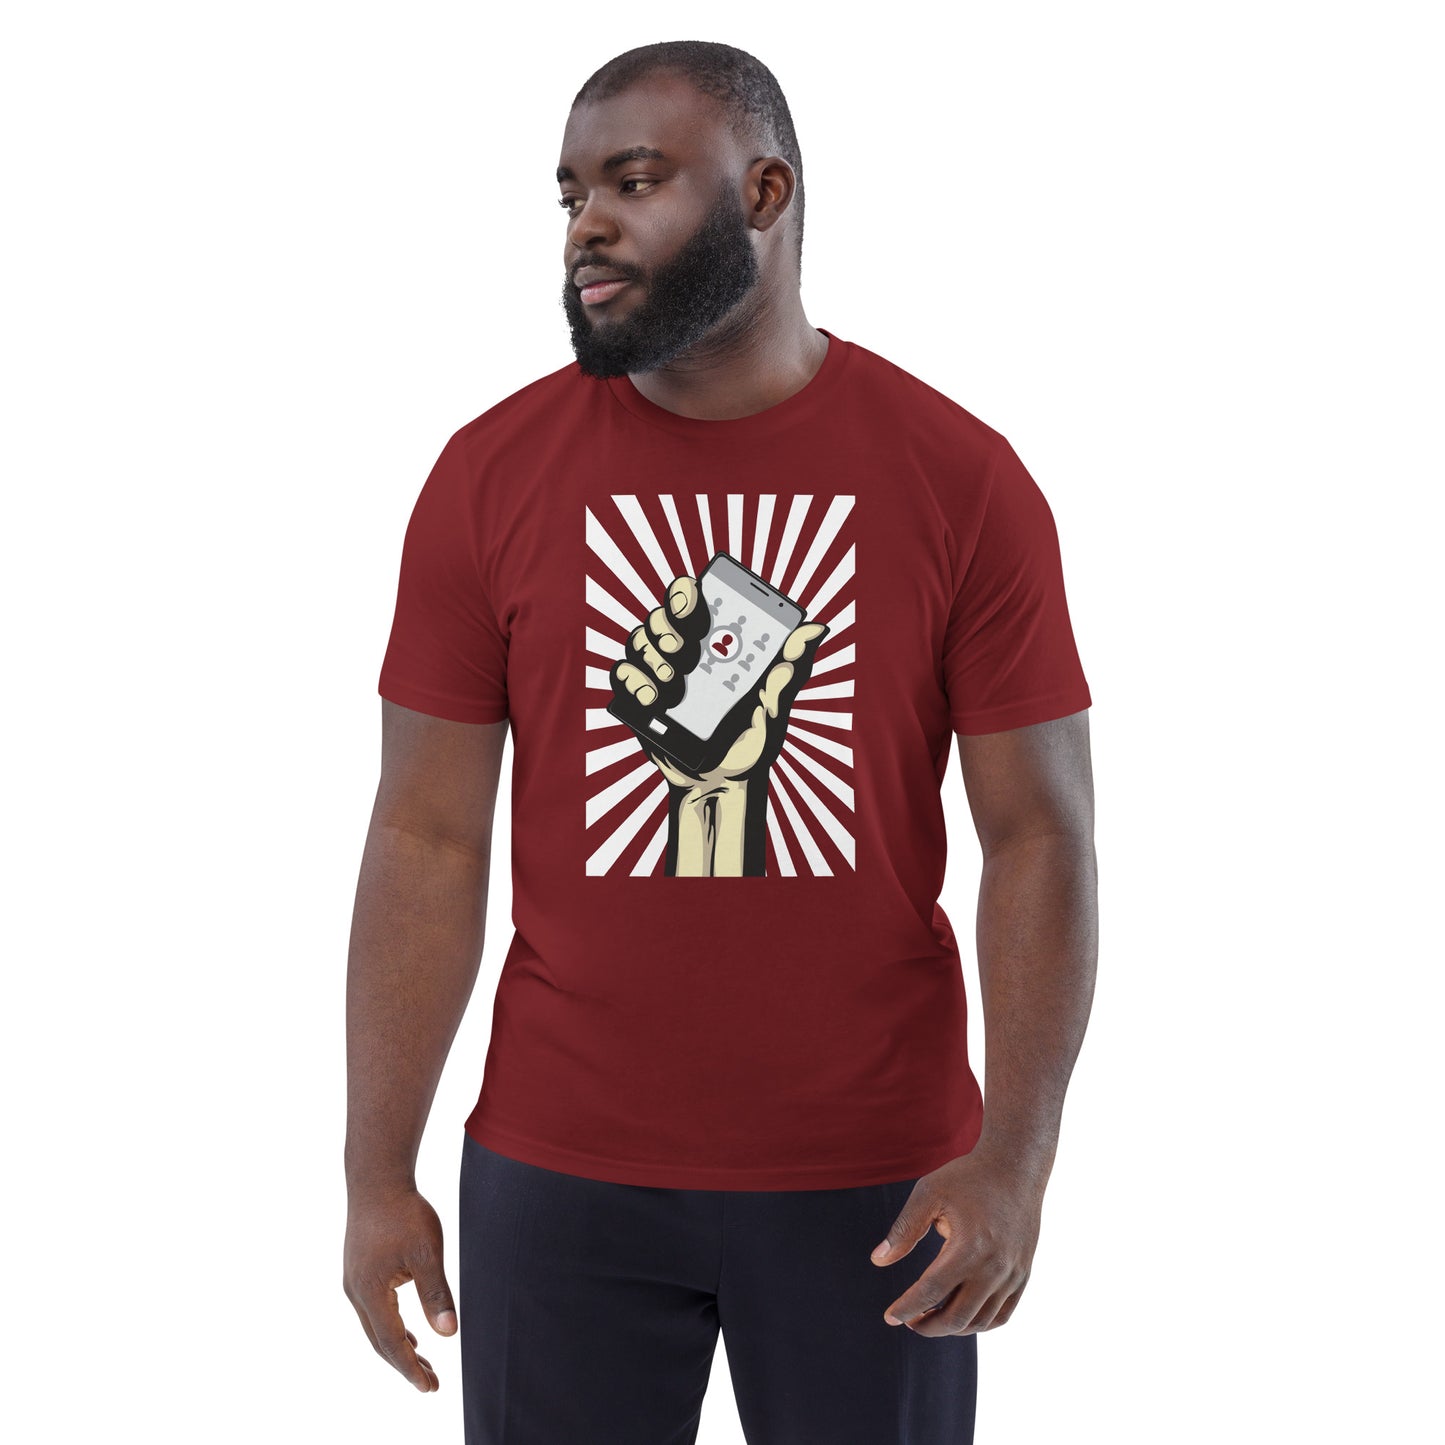 RecFest 2019 - Line-up T-Shirt